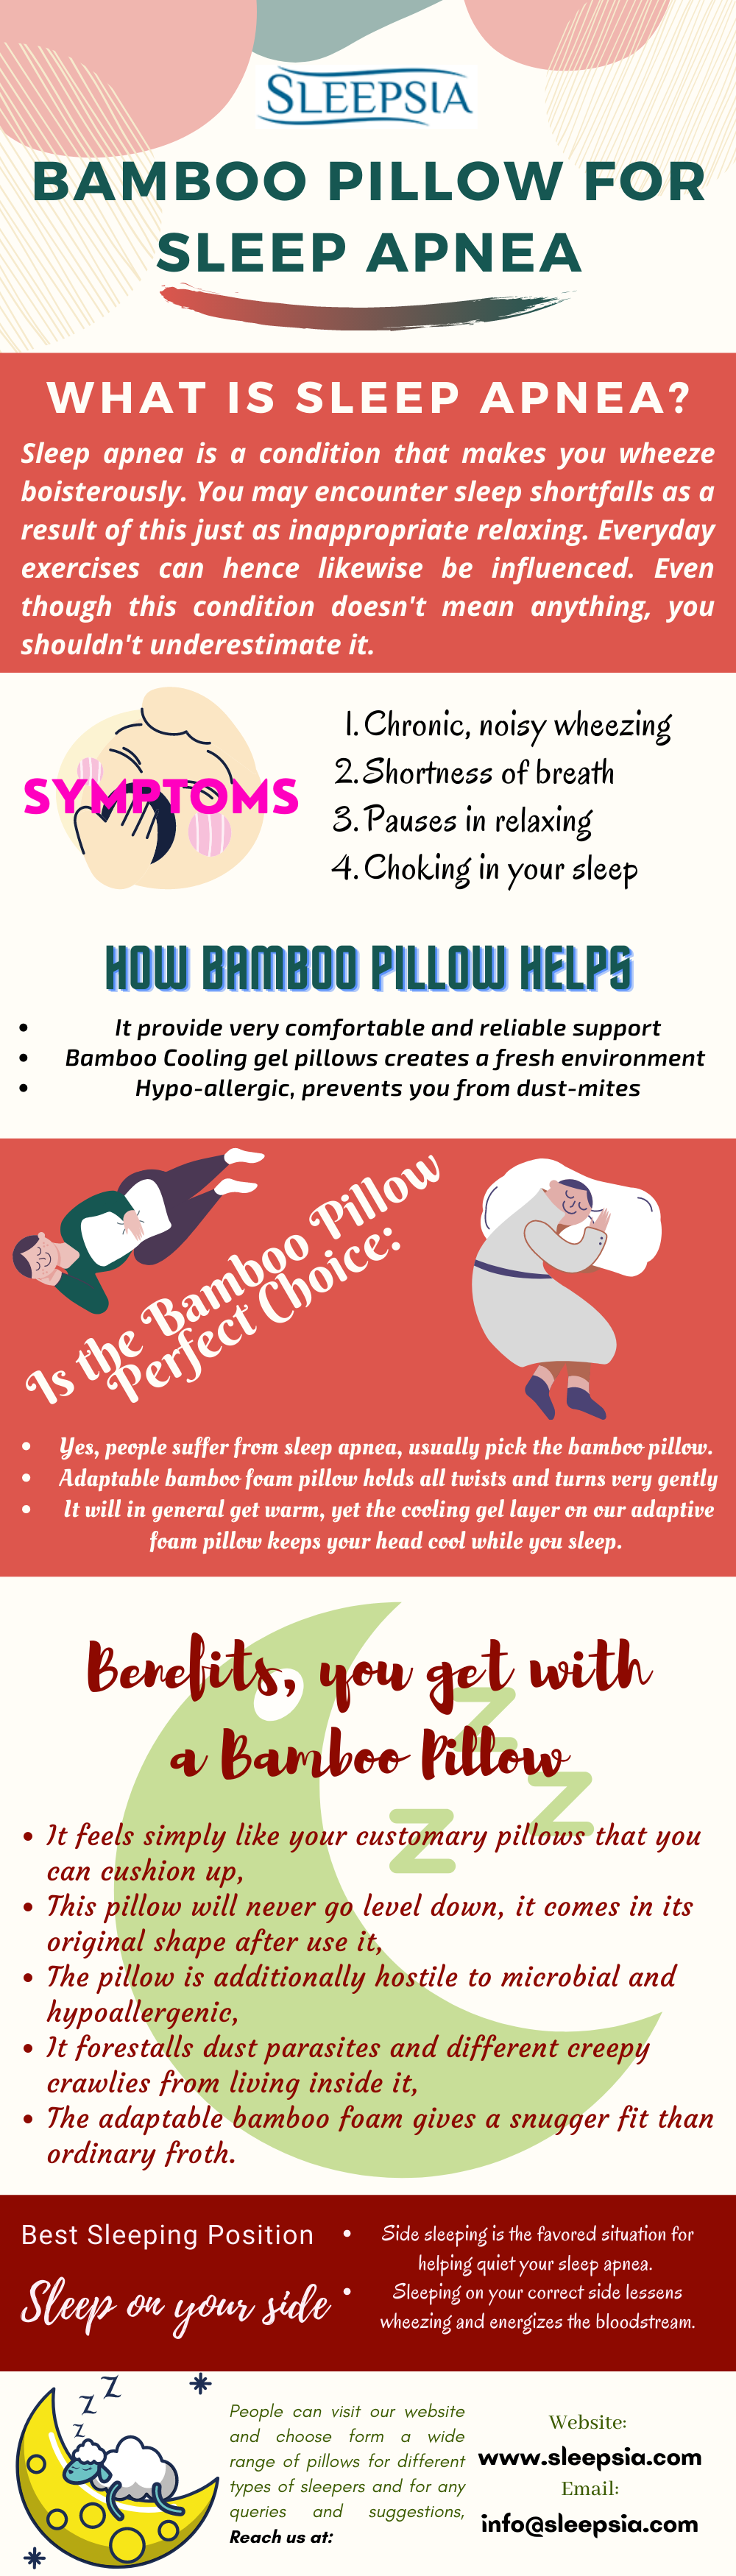 bamboo pillow for sleep apnea